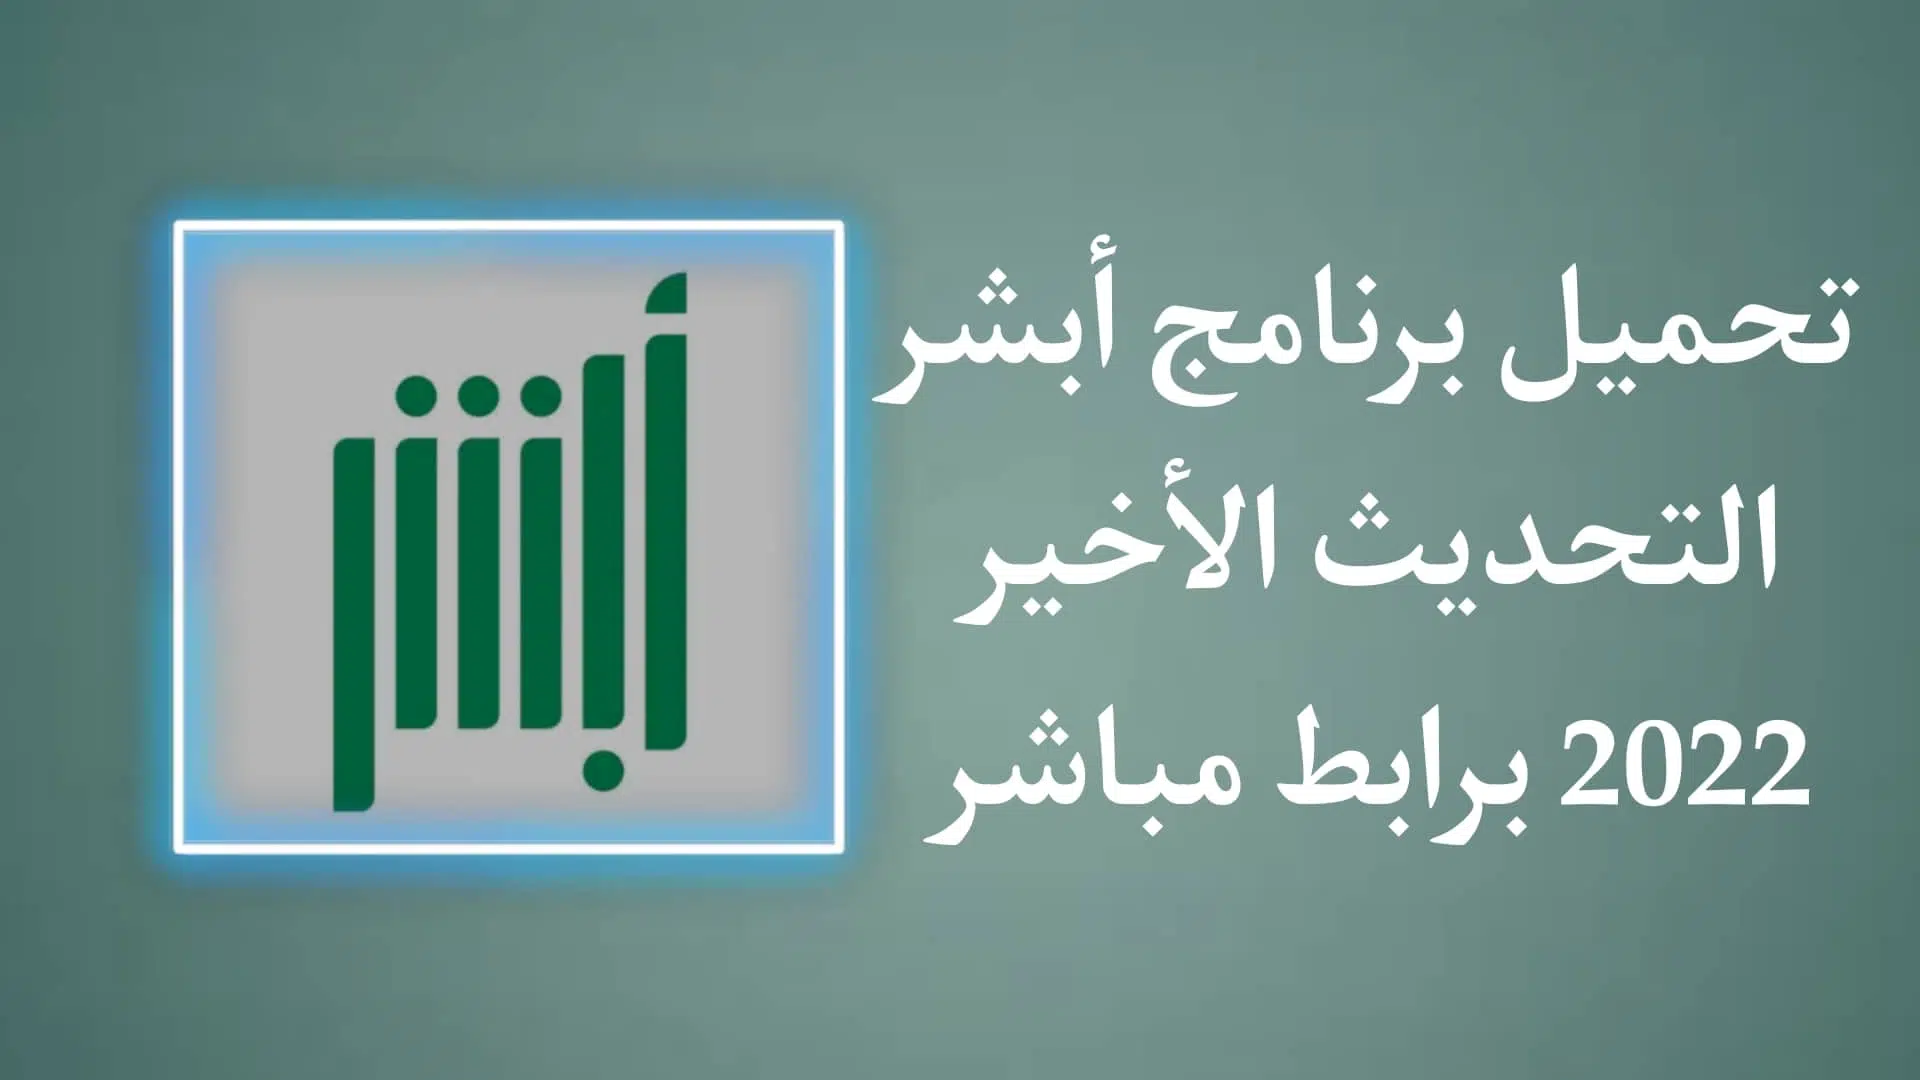 تحميل برنامج أبشر للاندرويد - موقع وزارة الداخلية السعودية